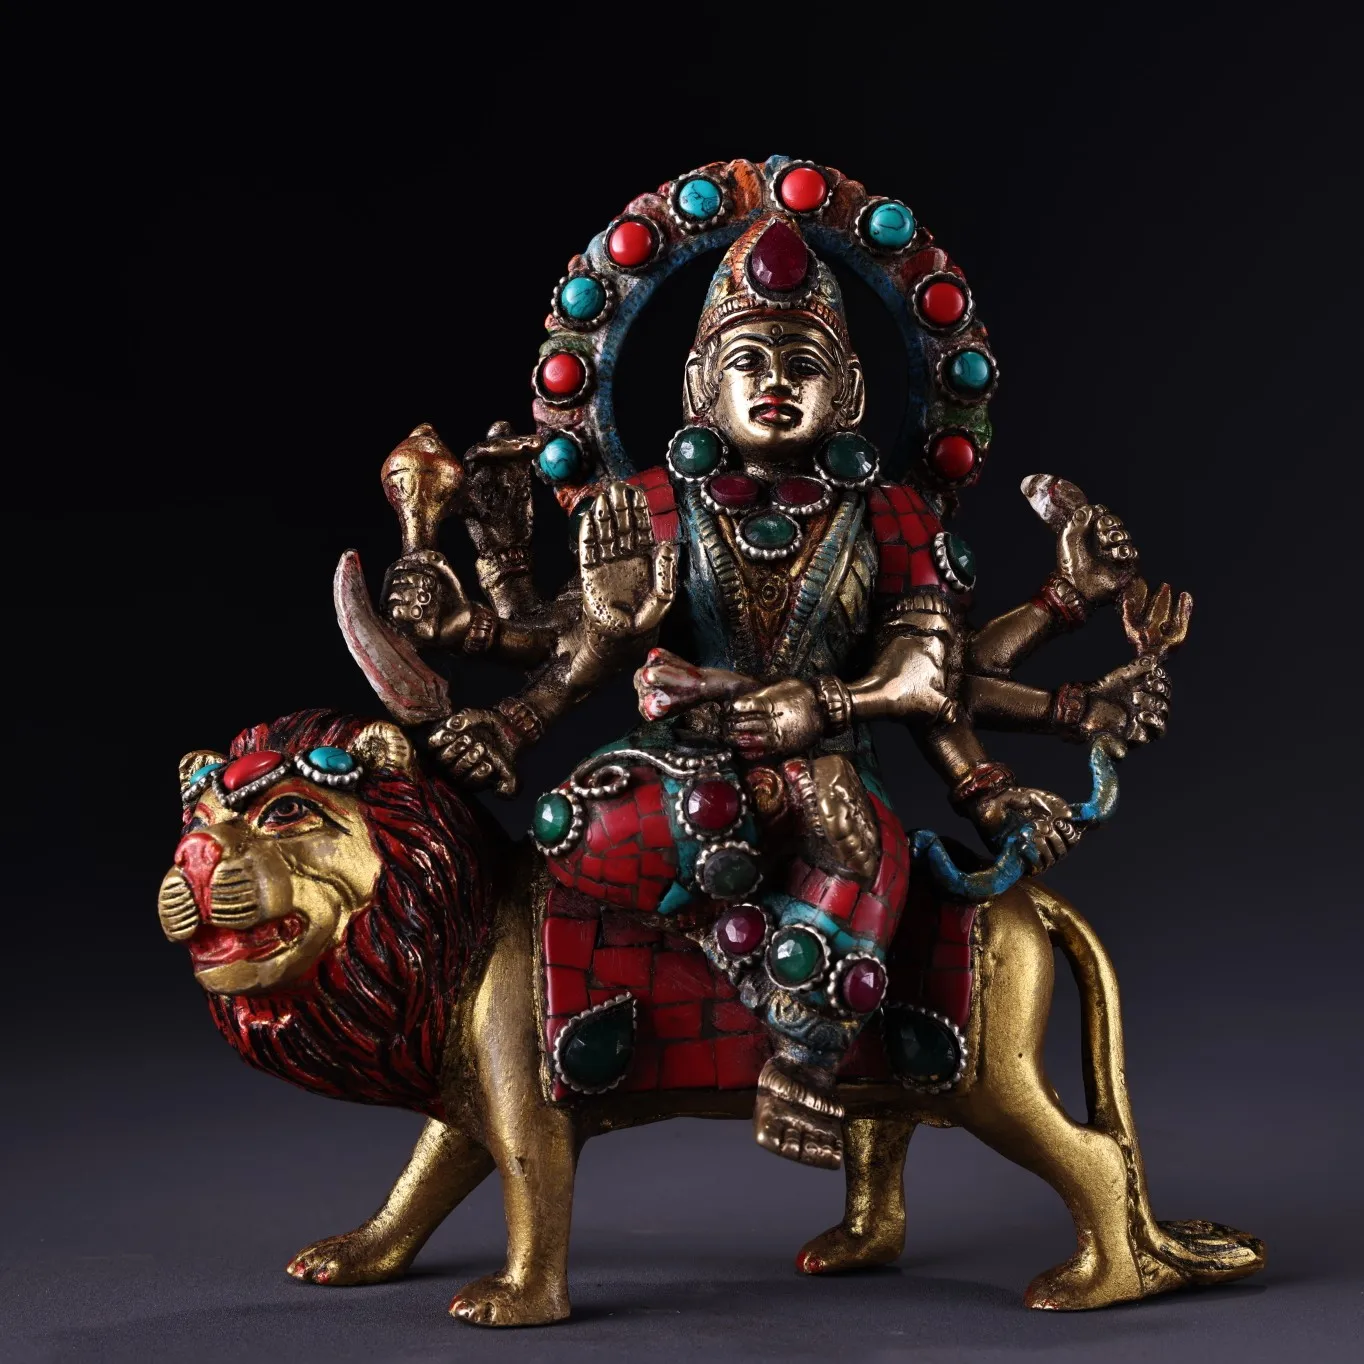 

Коллекция тибетских храмов, 6 дюймов, античный бронзовый контур под золото, окрашенный драгоценный камень, защита льва для езды в городе дха...